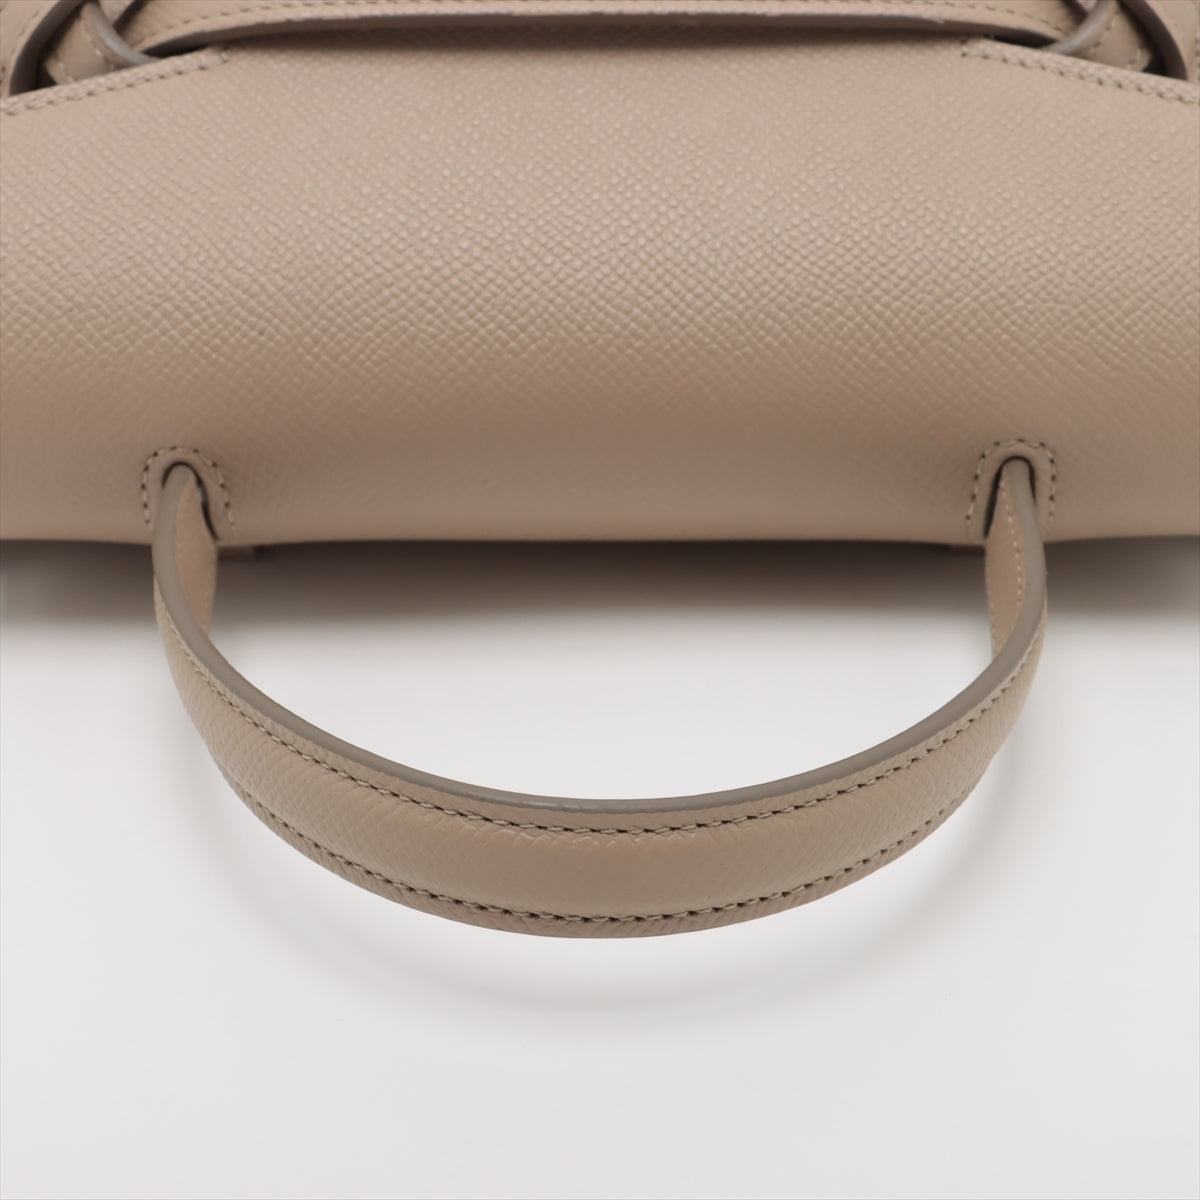 Celine Belt Bag Mini Leather 2WAY Handbag Gr Fence